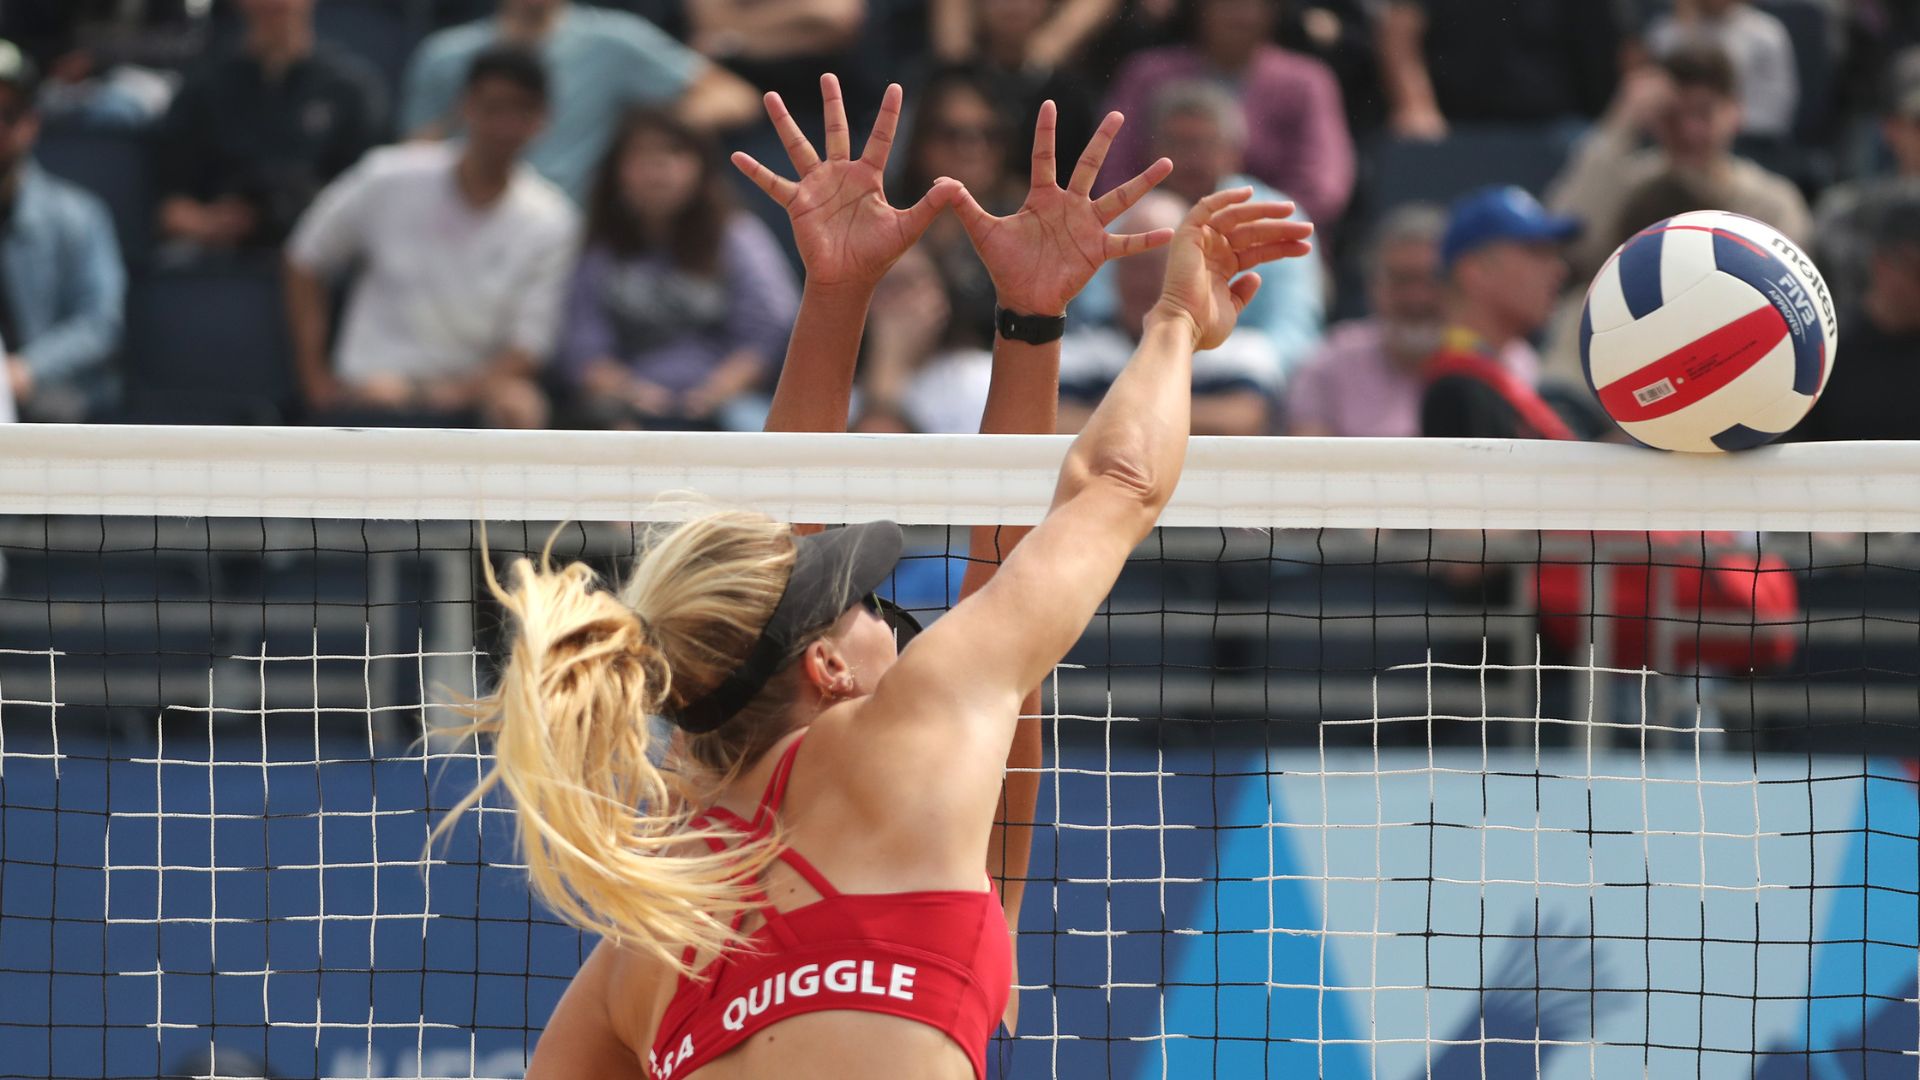 Estados Unidos pisa fuerte en el vóleibol playa femenino con Quiggle y Murphy